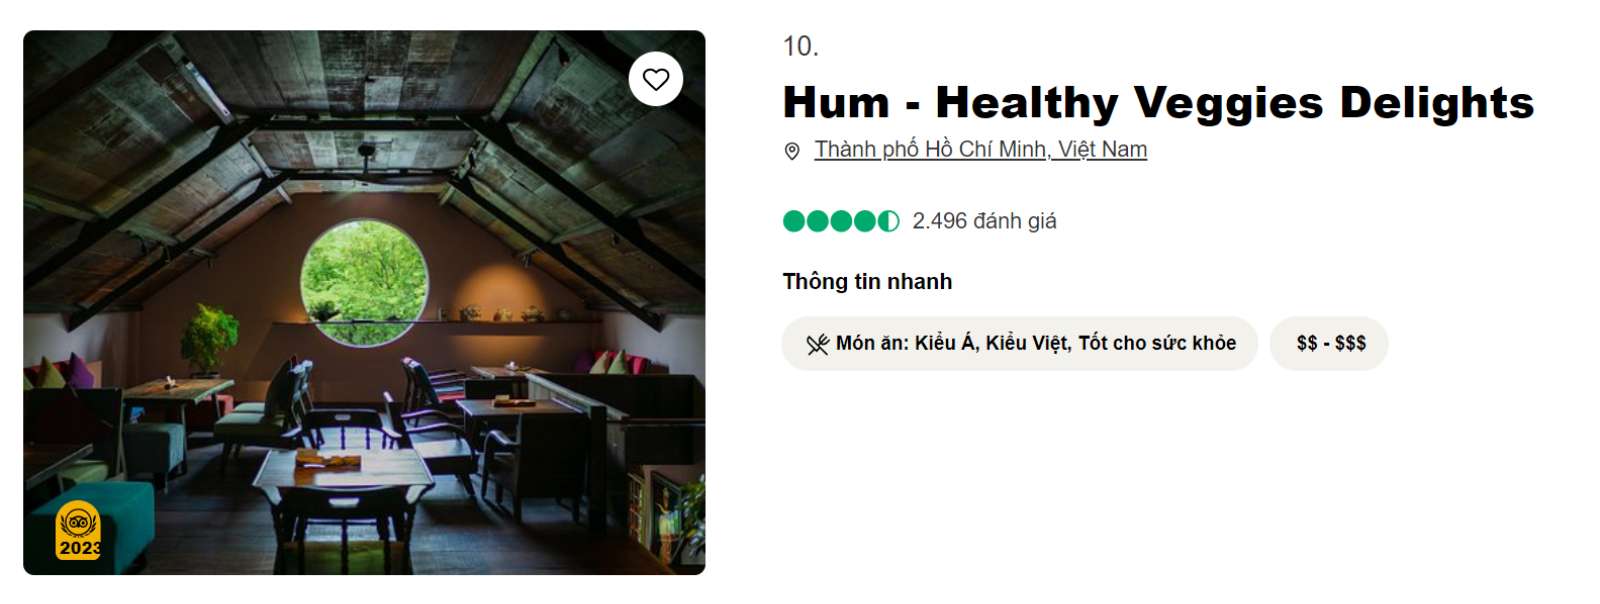 Hum Dining, nhà hàng chay, nhà hàng chay Sài Gòn, TripAdvisor, ẩm thực